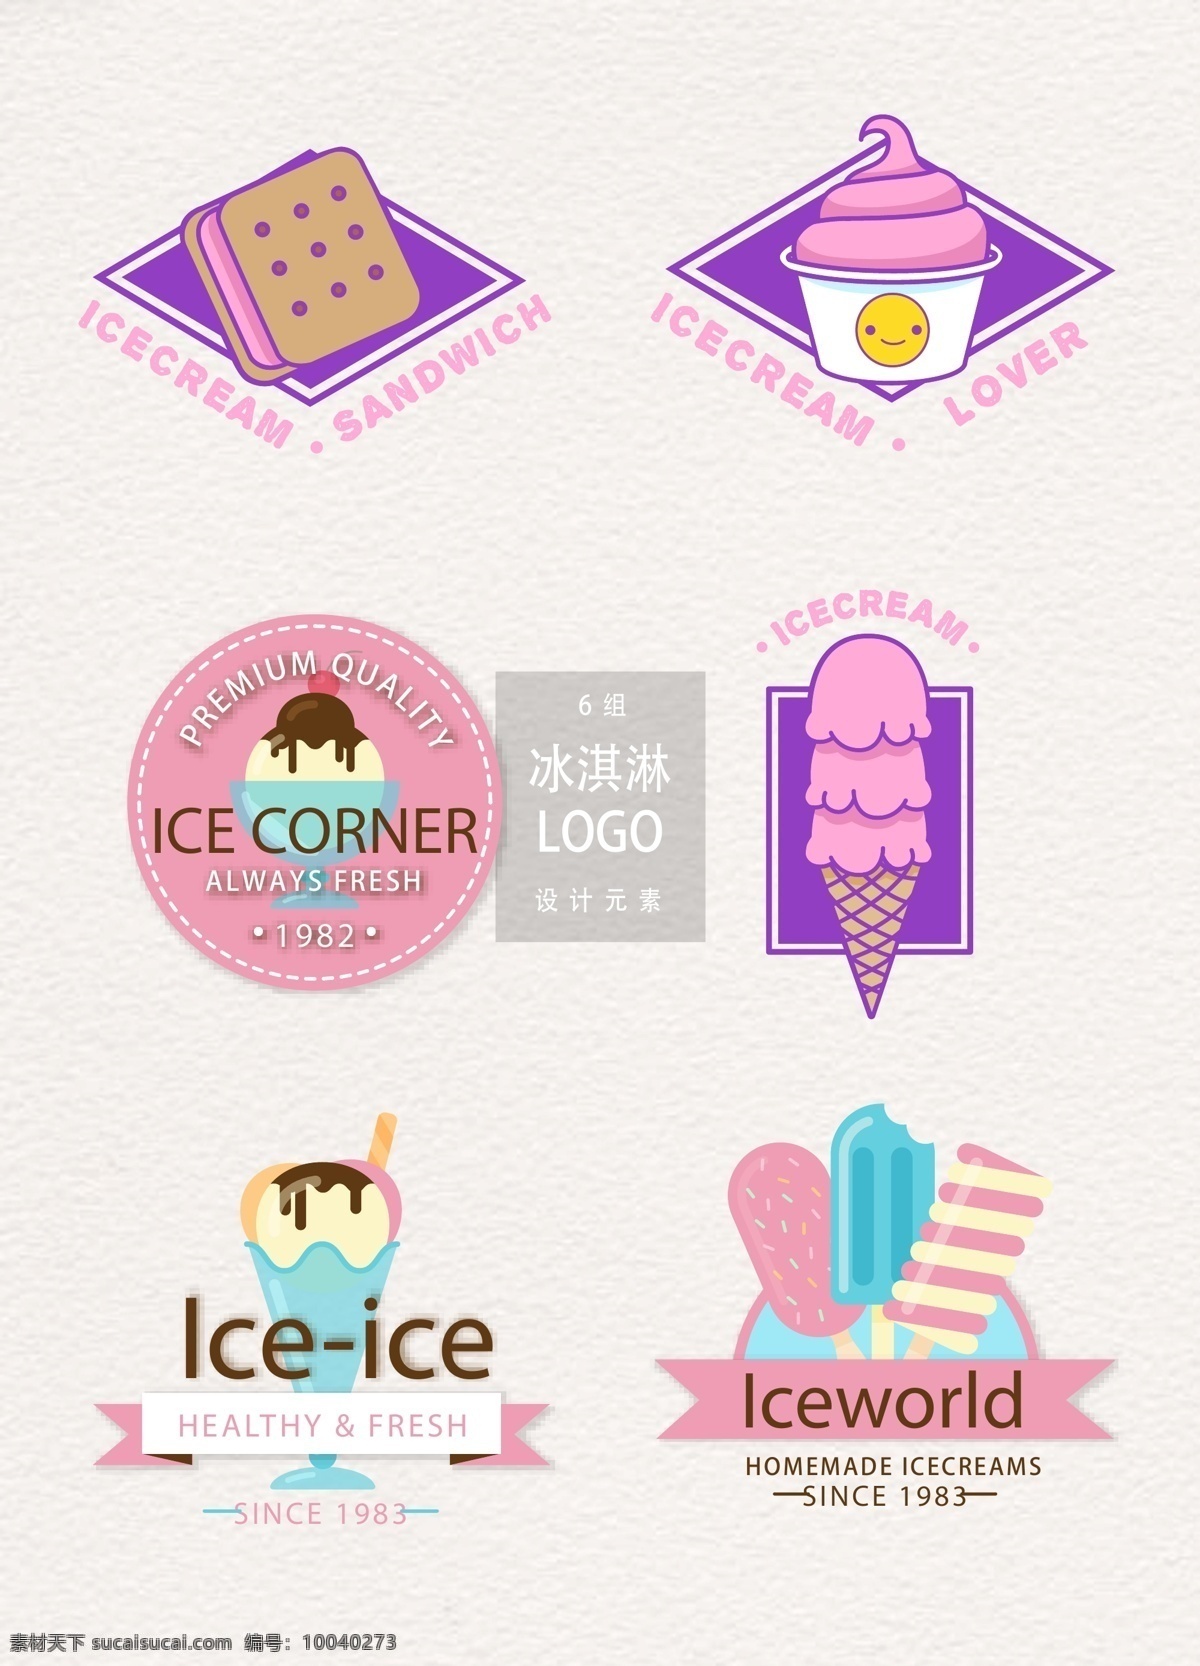 时尚 冰淇淋 店 logo 图标 图标设计 矢量素材 甜品 手绘冰淇淋 冰淇淋图标 甜品logo 时尚图标